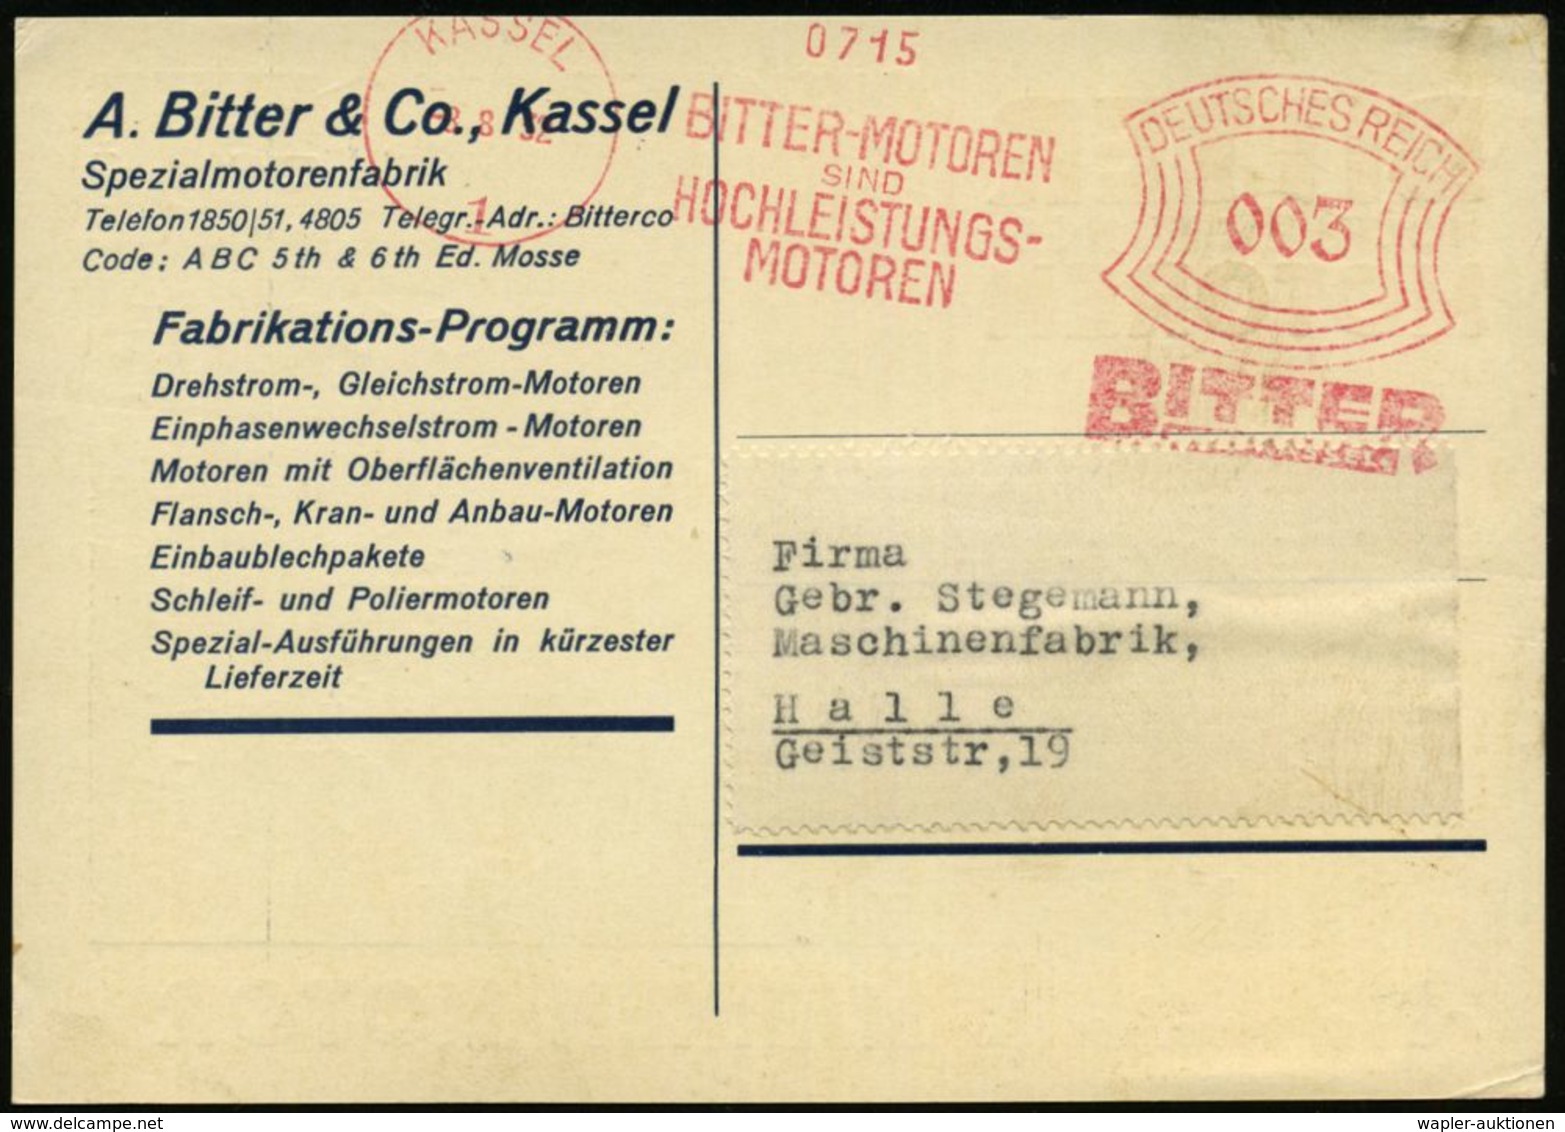 KASSEL/ 1/ BITTER-MOTOREN/ SIND/ HOCHLEISTUNGS-/ MOTOREN 1932 (8.8.) AFS , Dekorative, Zweifarbige.Reklame-Ak.: E-Motor  - Electricity